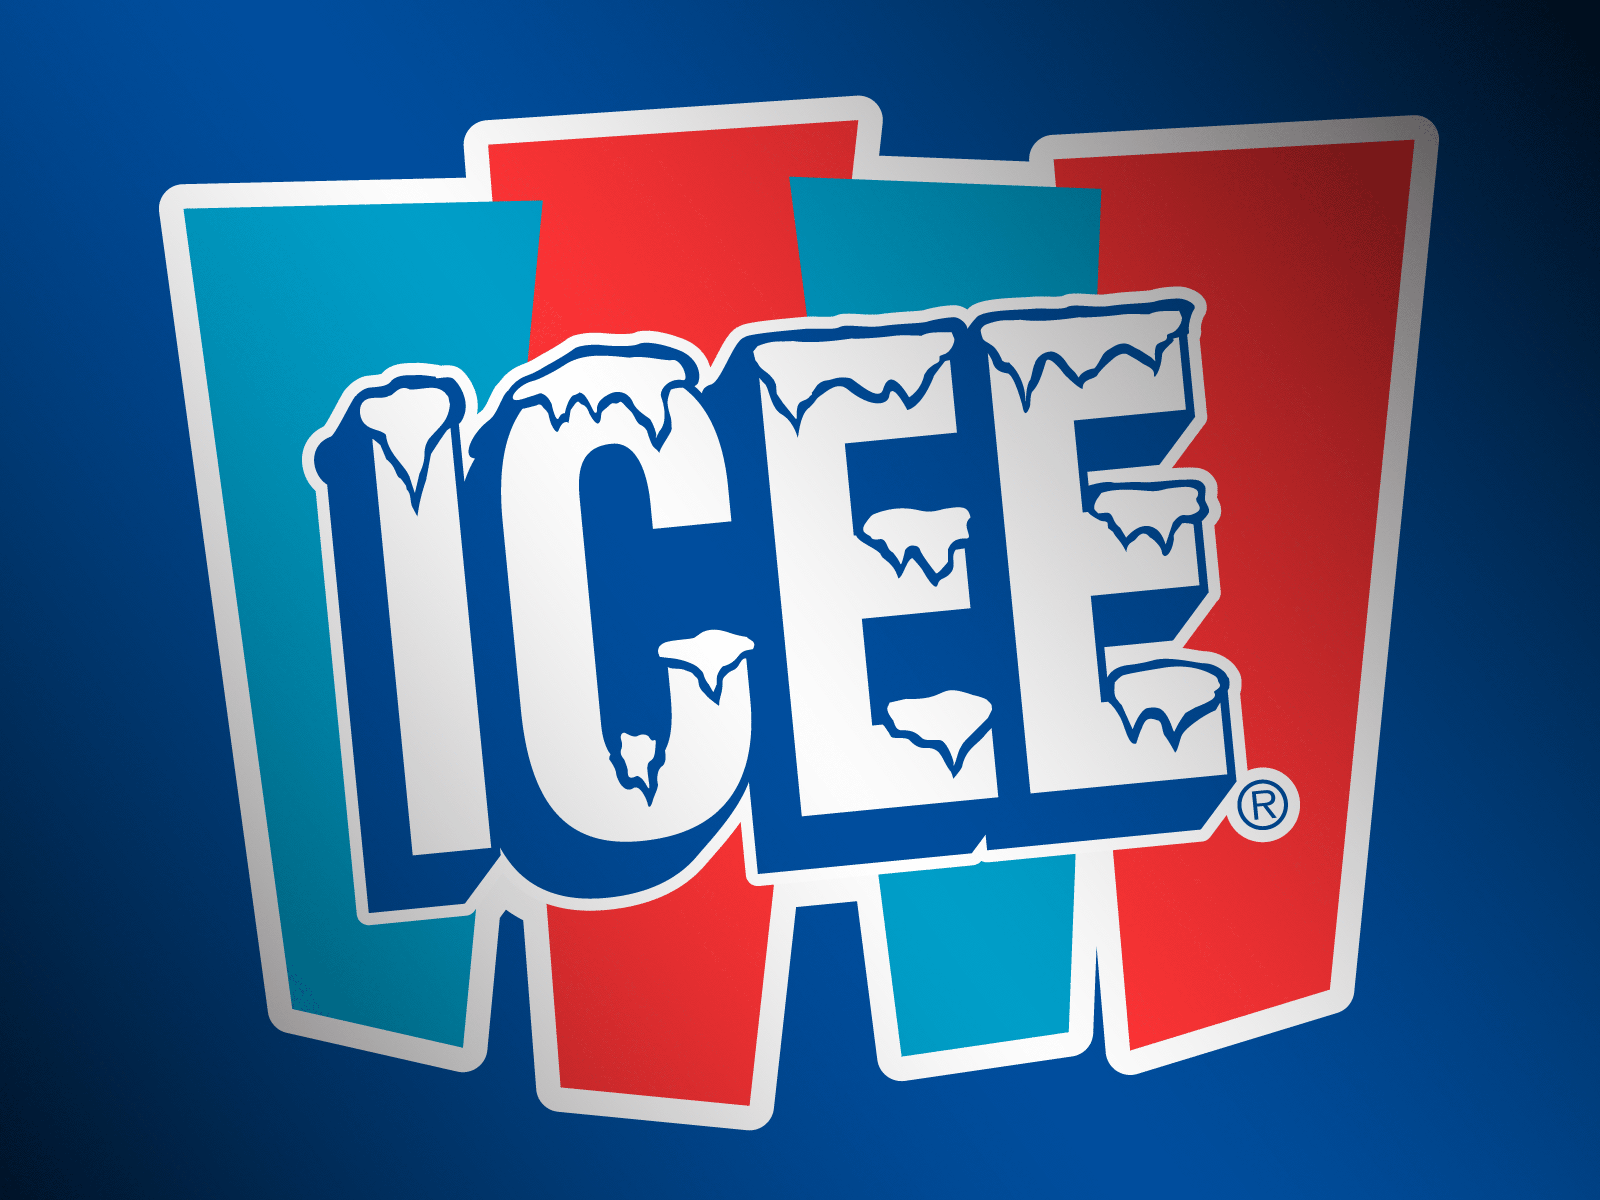 Icee Logo - Fun Zone